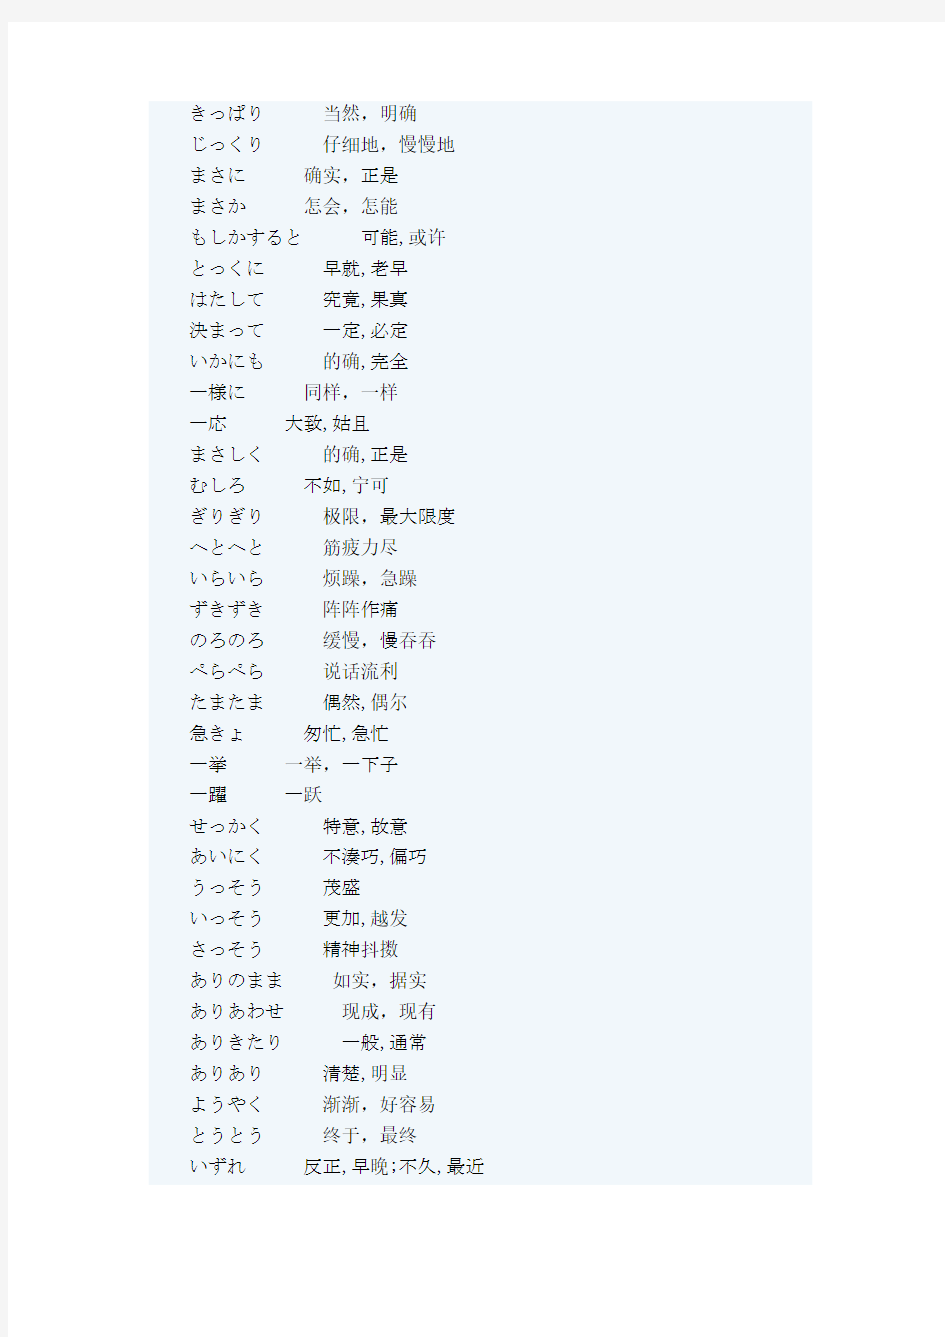 日语一级考试副词整理